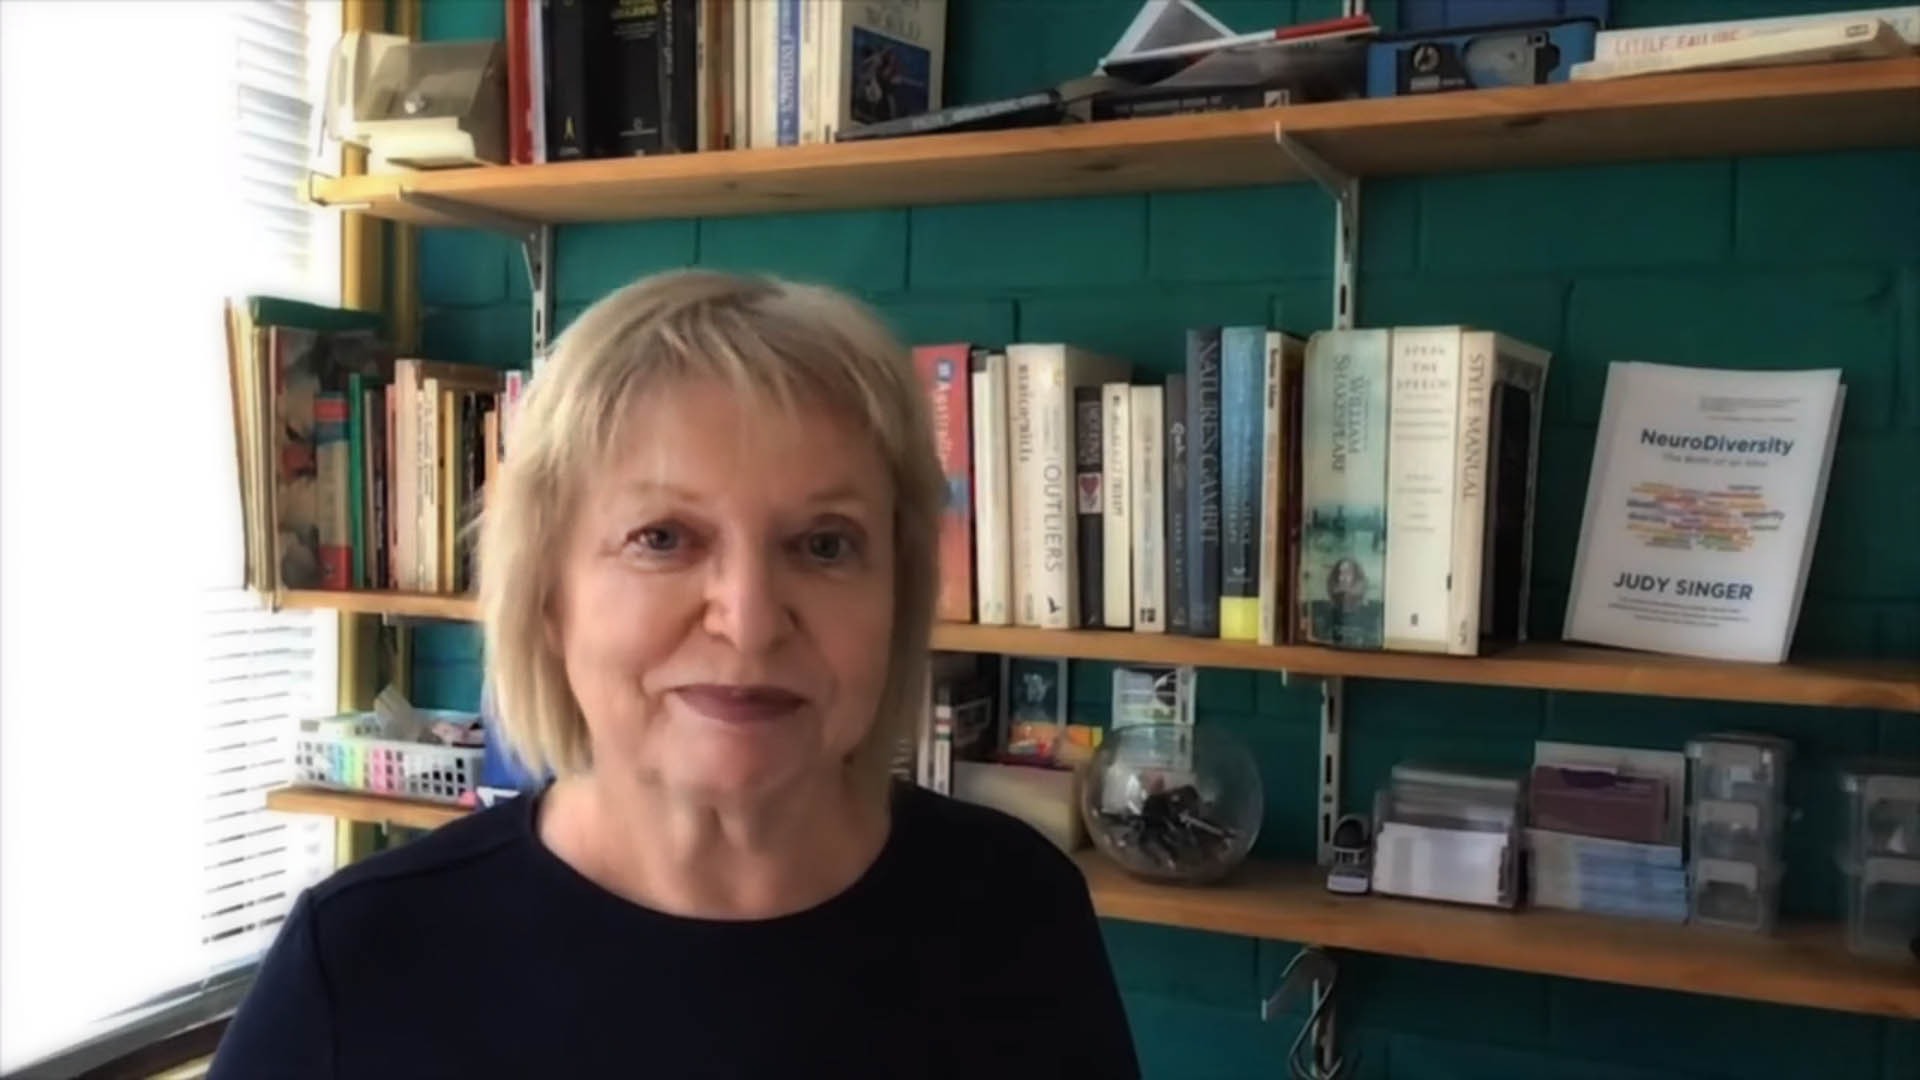 Fermo immagine tratto dal video promozionale del lancio del proprio libro nel canale YouTube della sociologa australiana Judy Singer, la prima ad usare il termine 